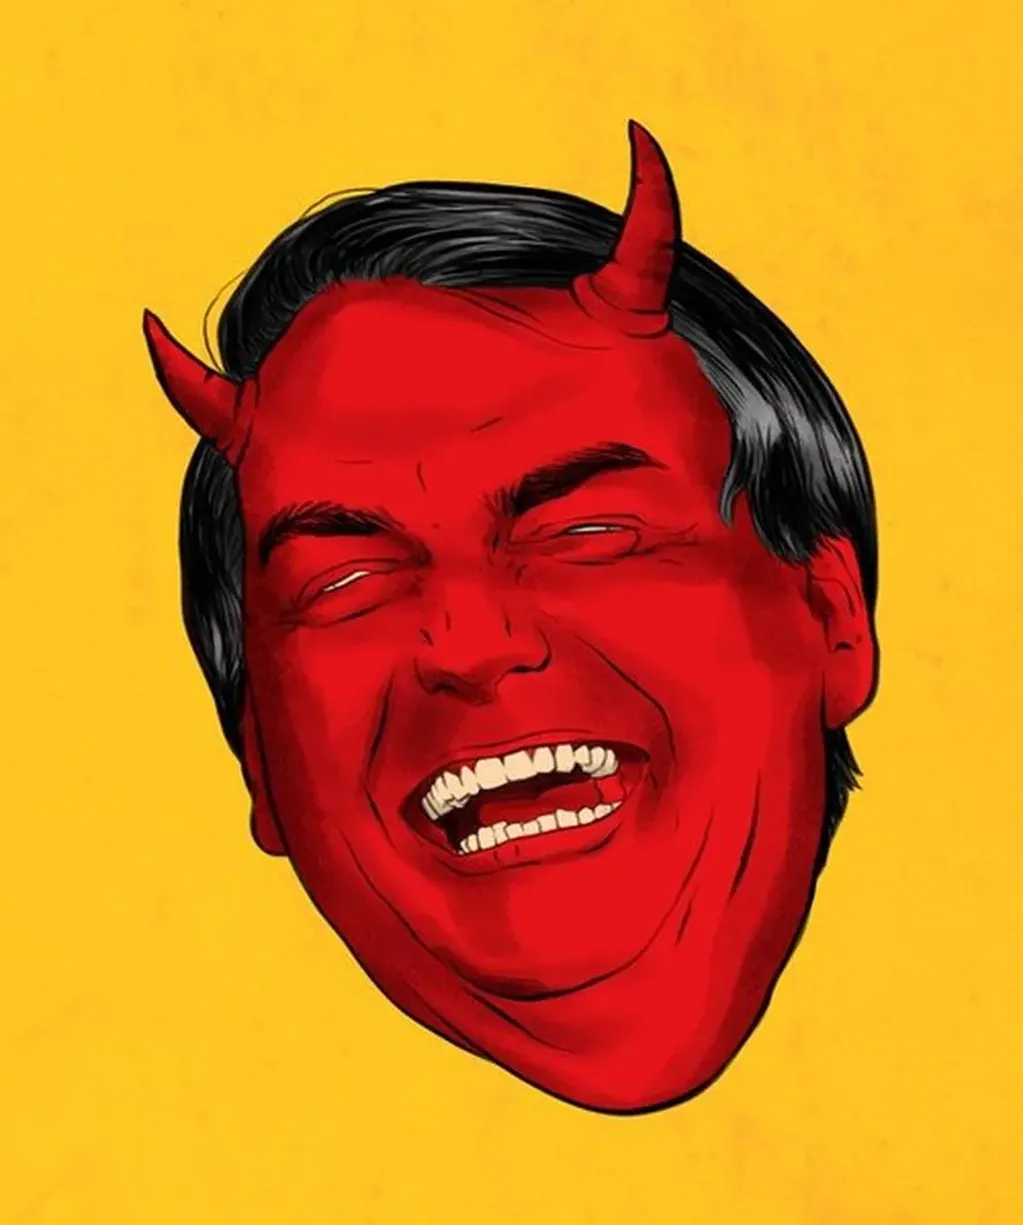 Una de las imágenes más elocuentes que se pueden ver en el site de Bolsonaro.